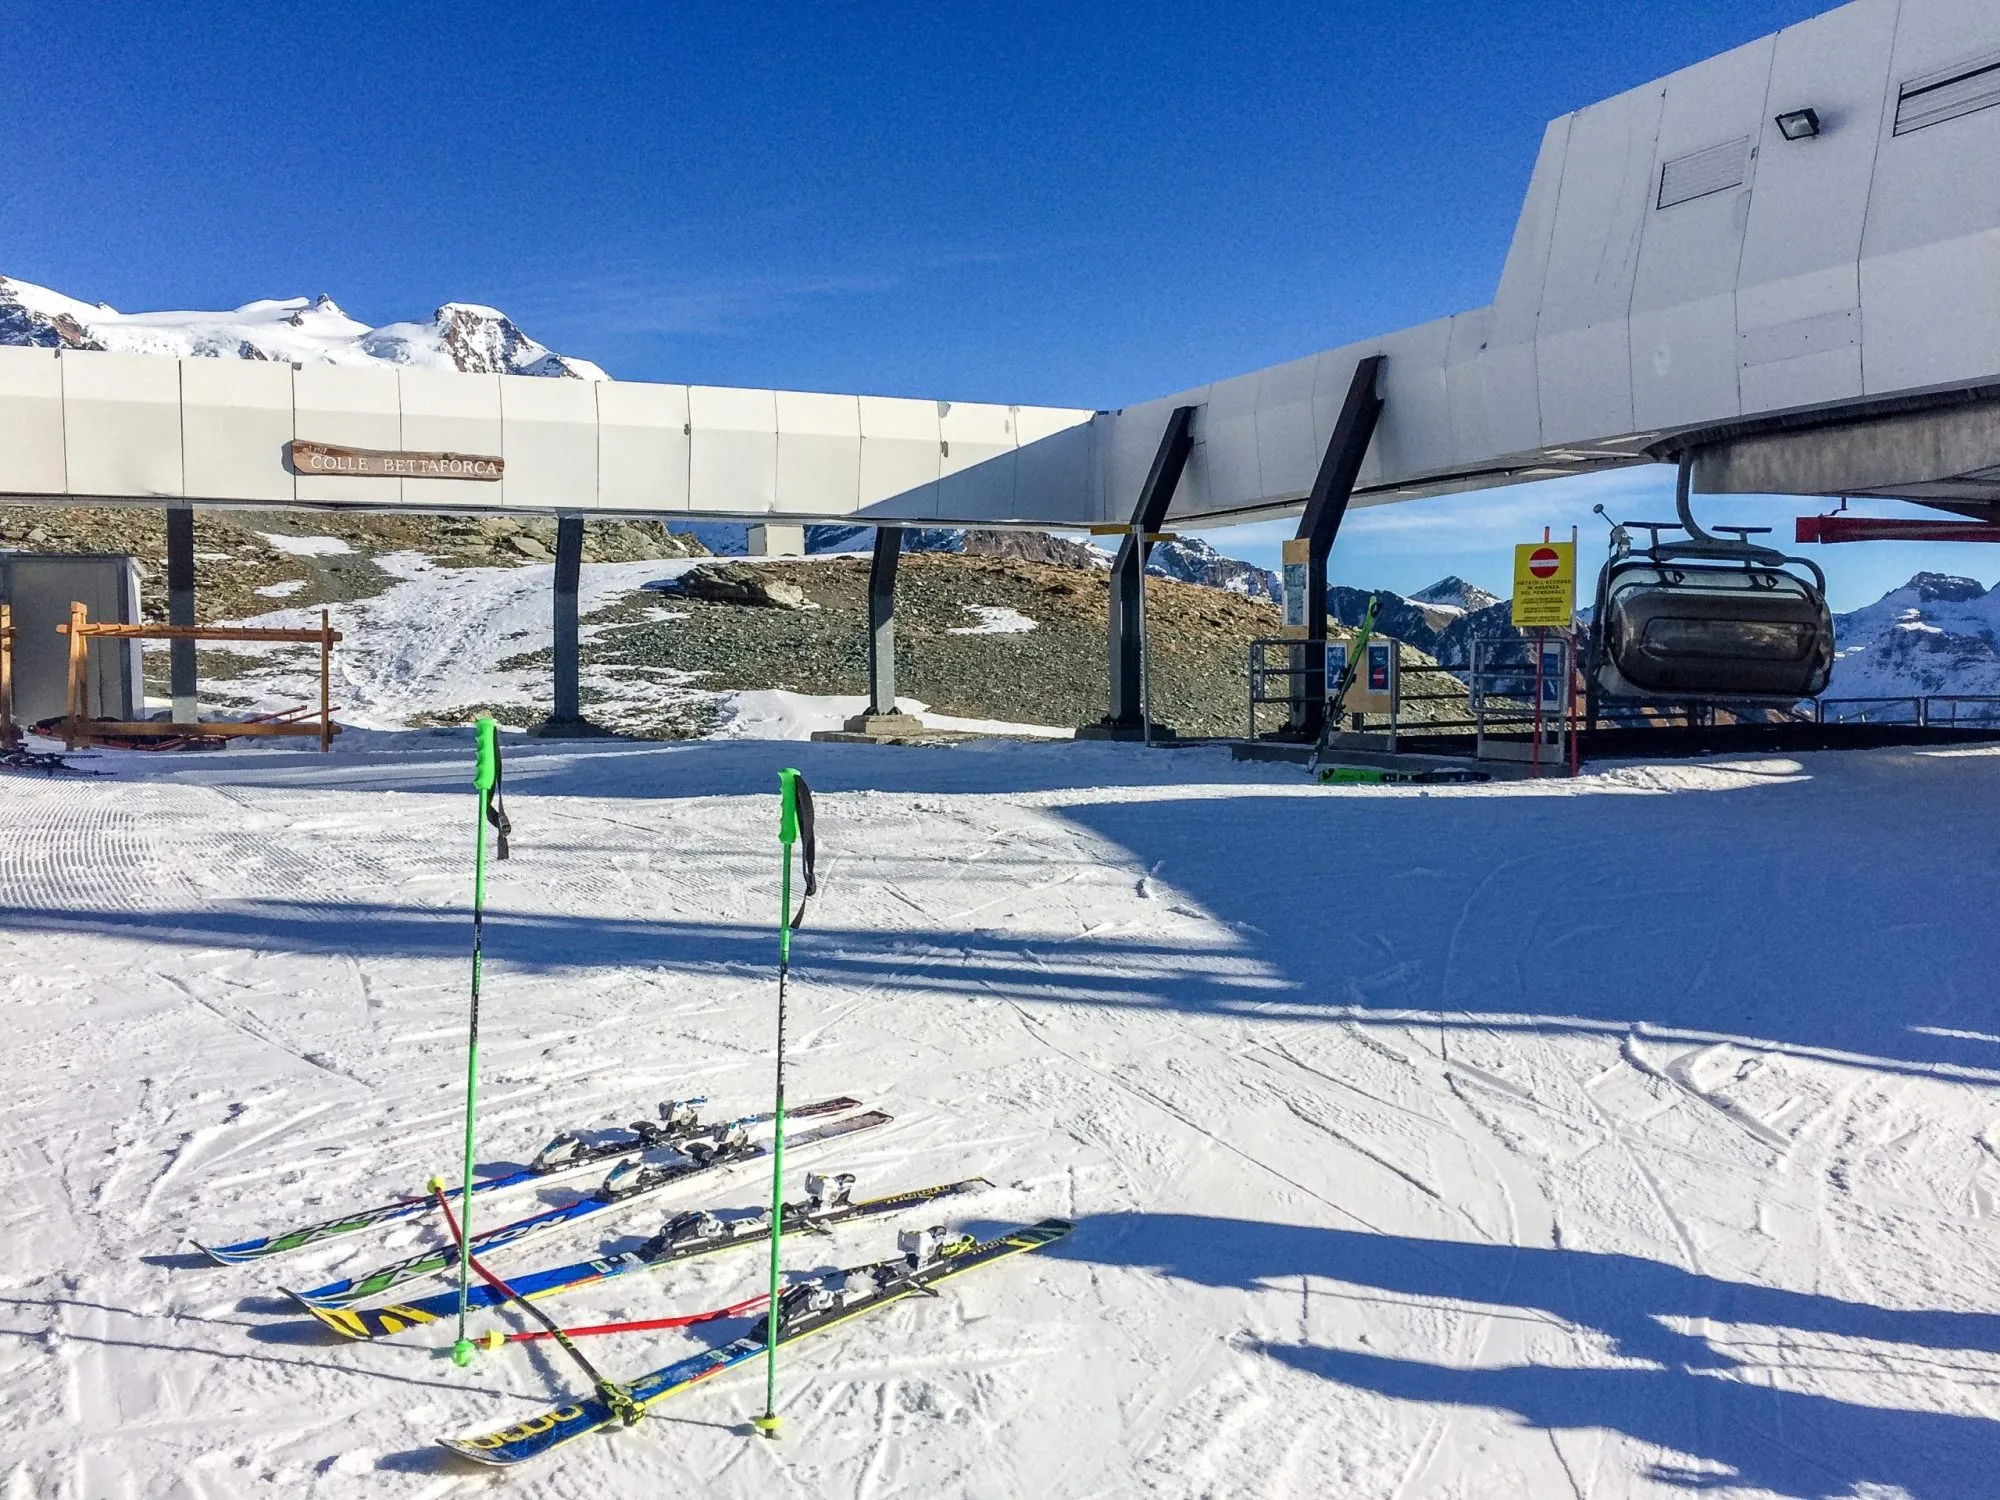 Ski slopes in the alpine ski resort of Monte Rosa, Alps region, Italy